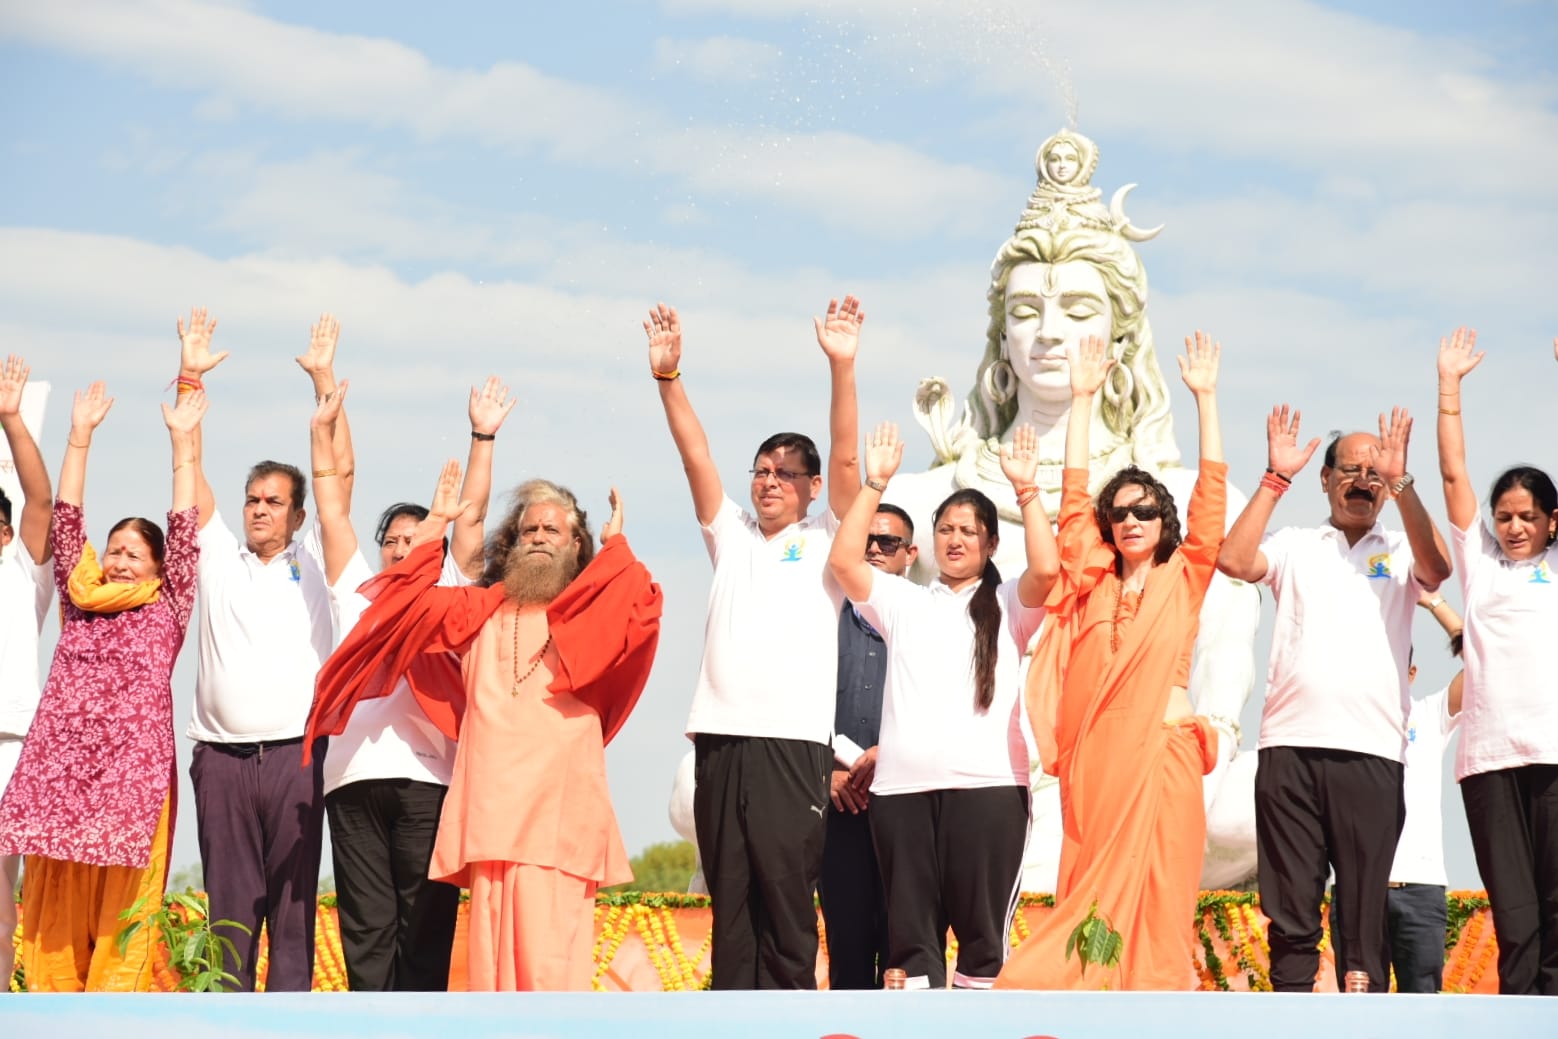 अंतर्राष्ट्रीय योग दिवस पर CM पुष्कर सिंह धामी ने परमार्थ निकेतन में किया योगाभ्यास….